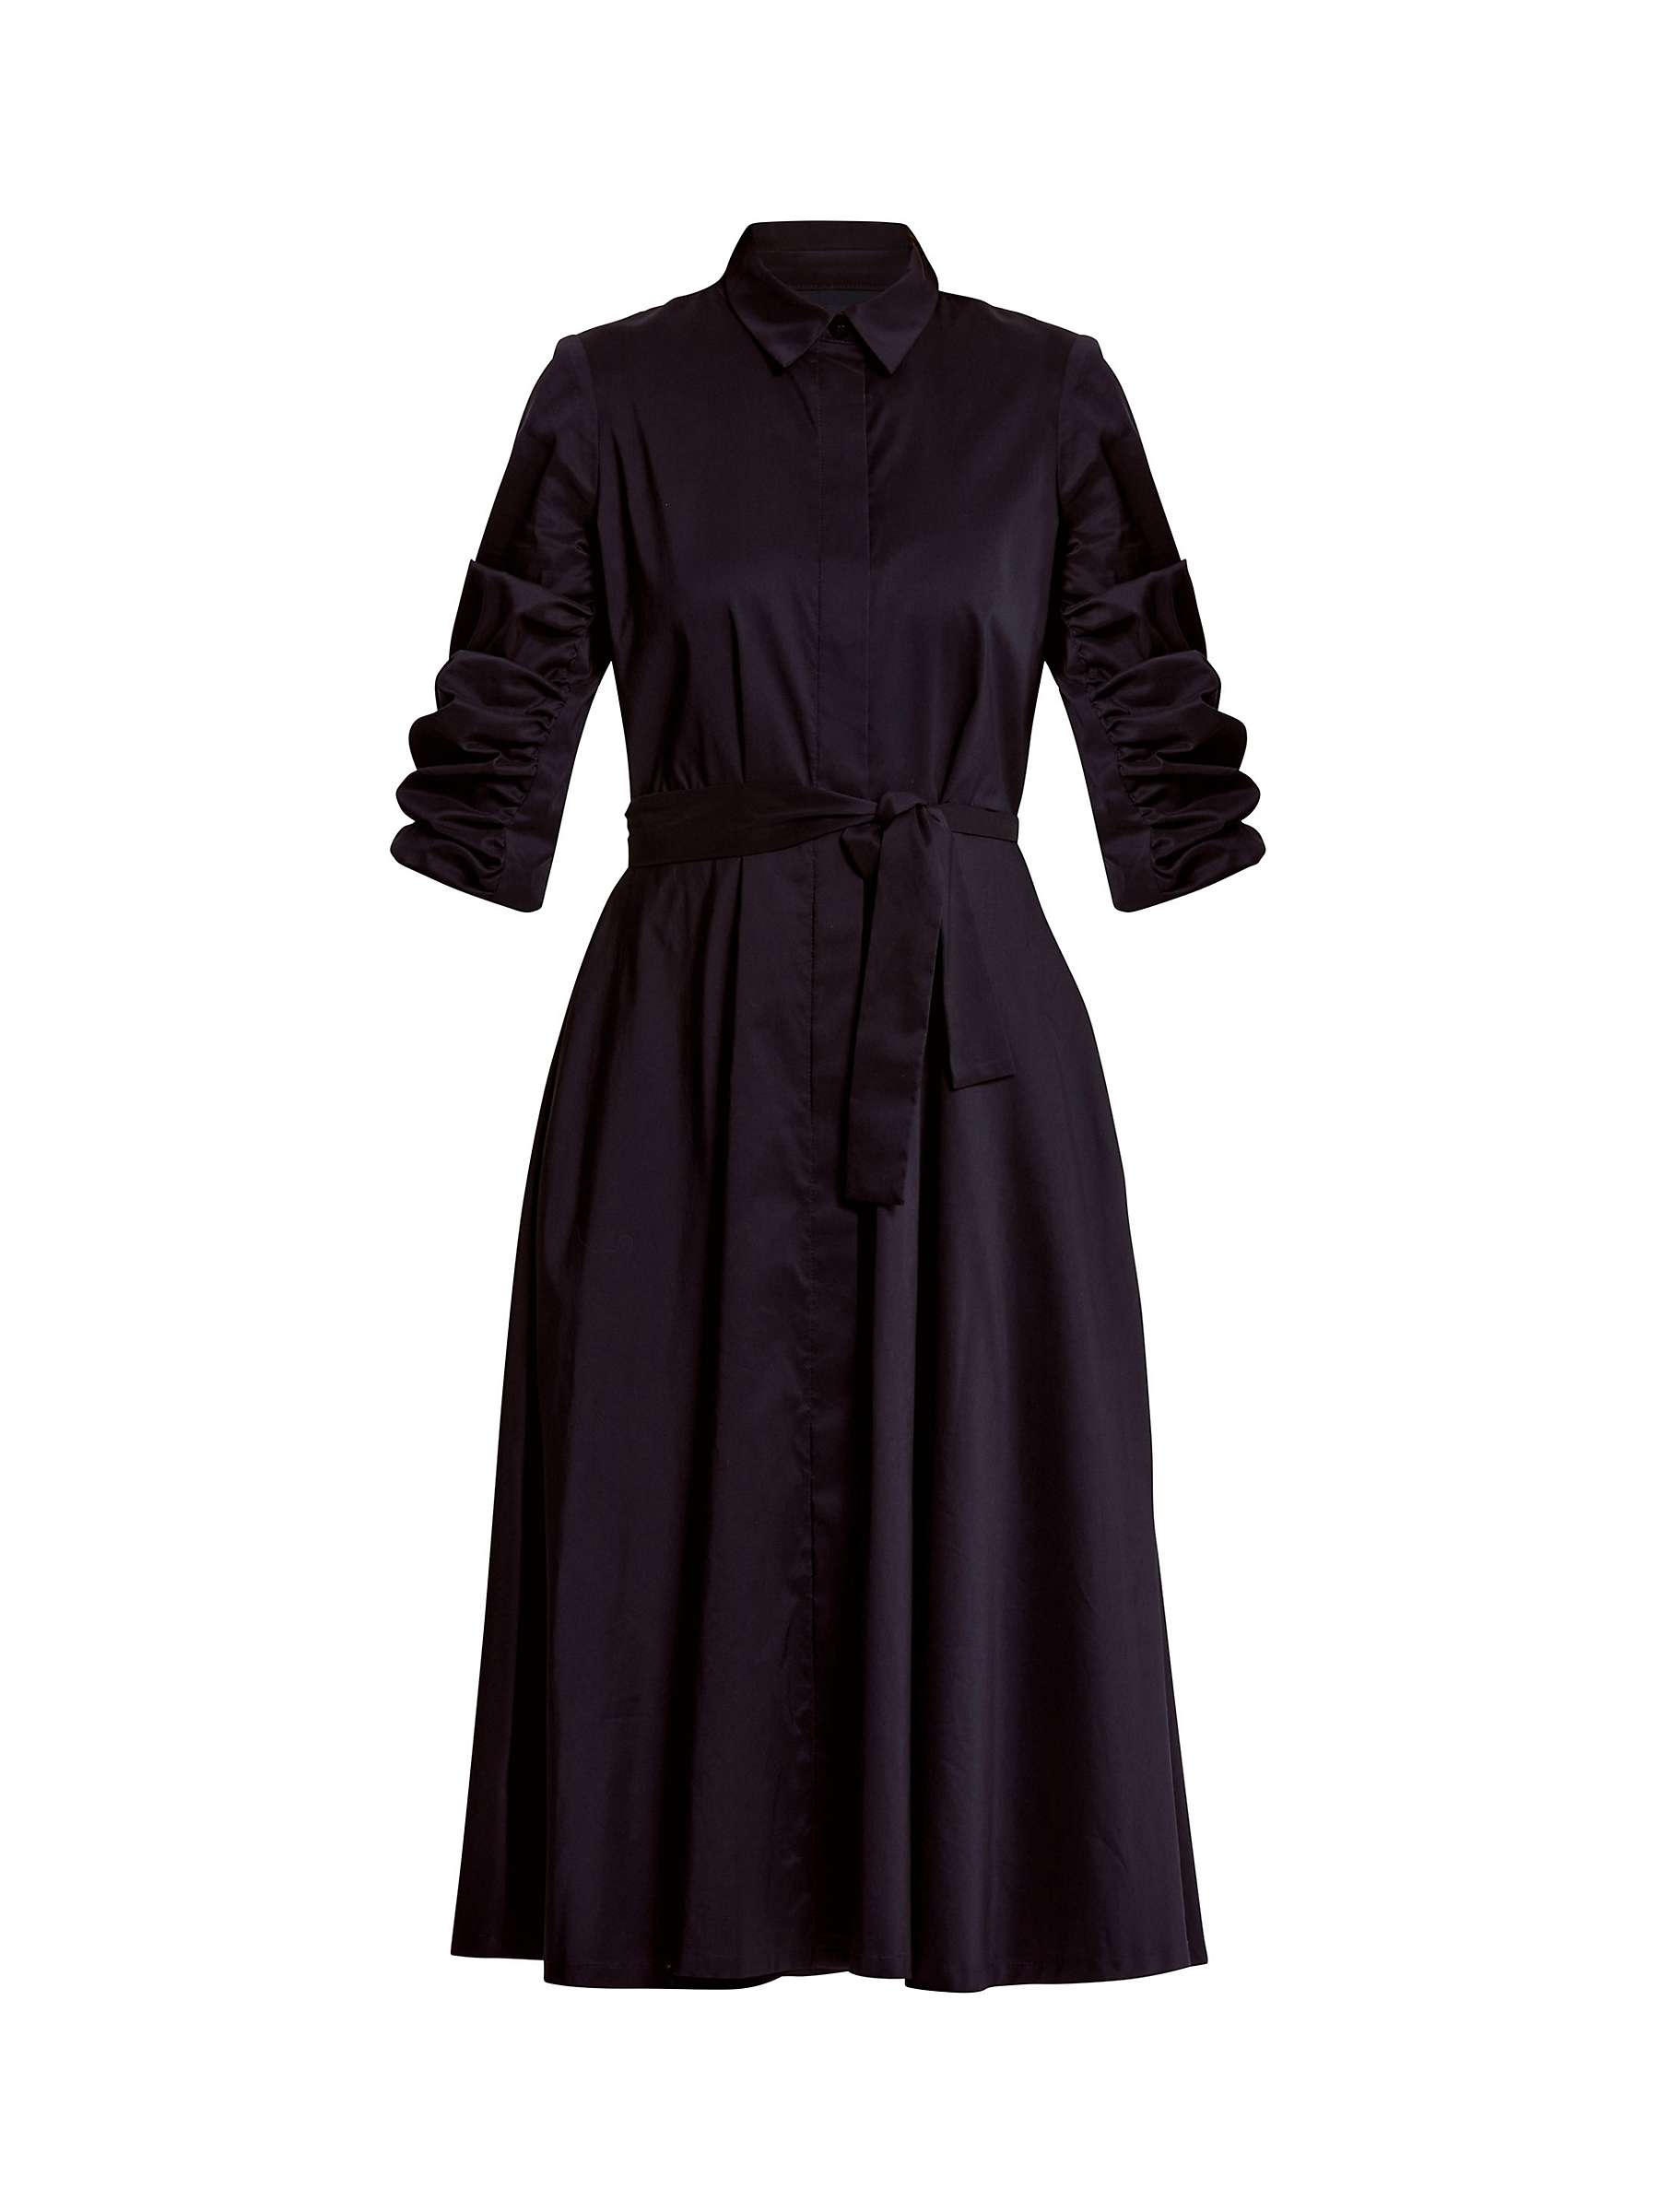 Buy Helen McAlinden Leah Shirt Dress Online at johnlewis.com